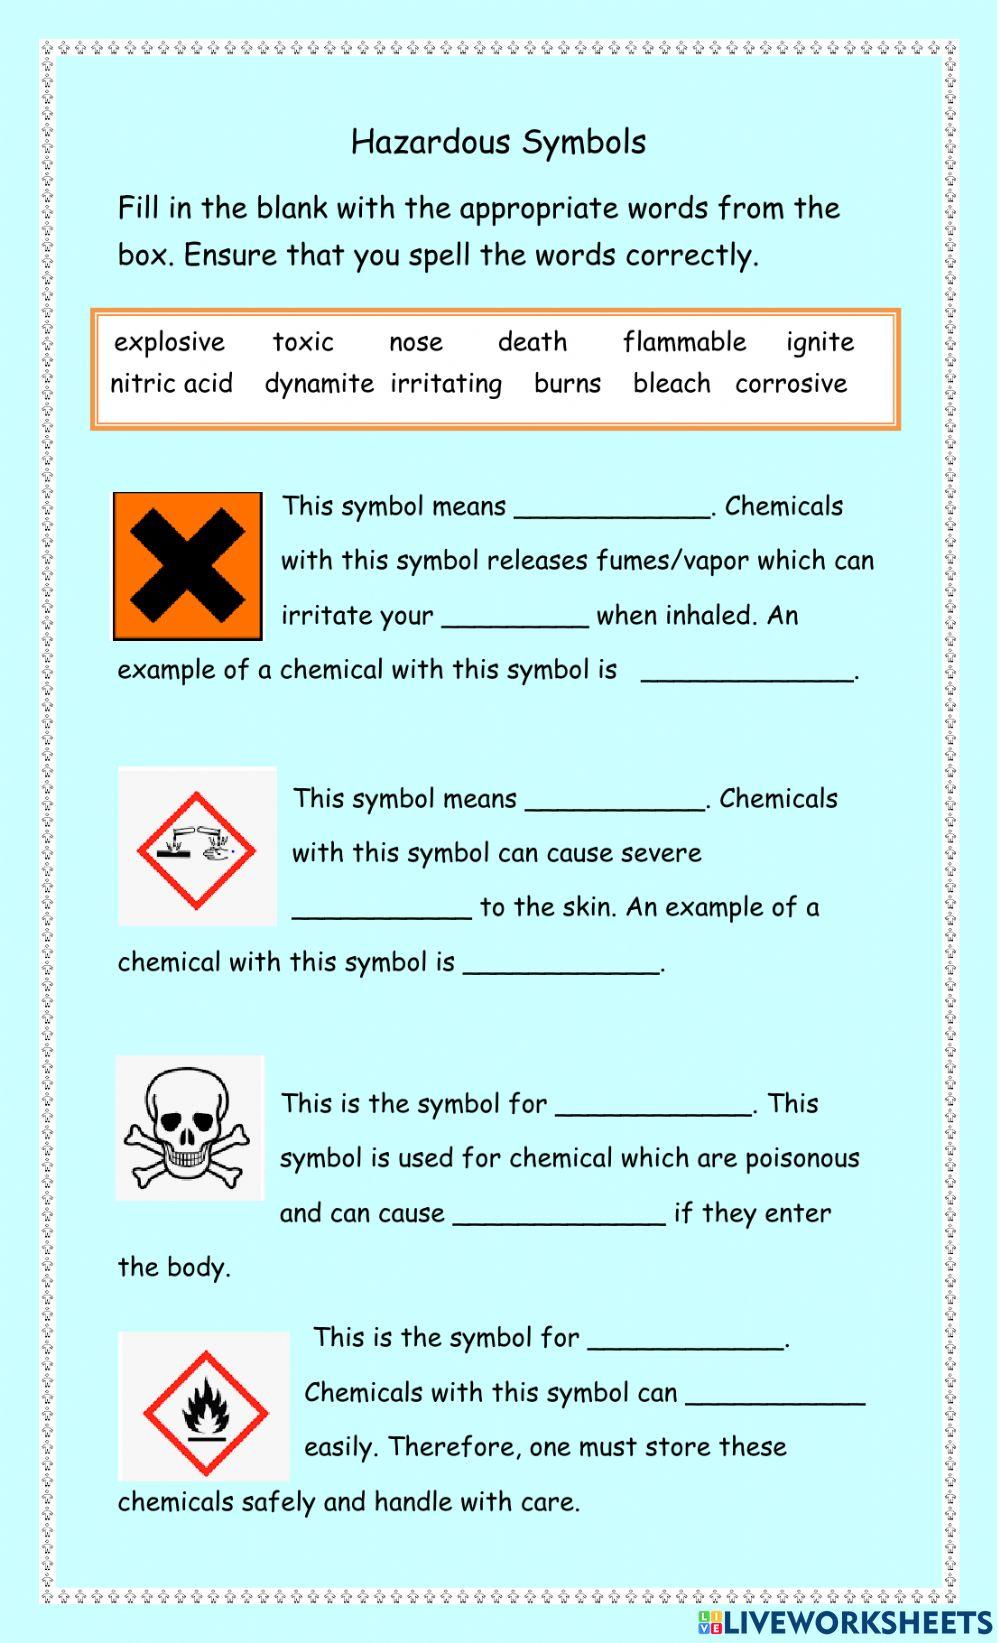 Hazard-safety symbols